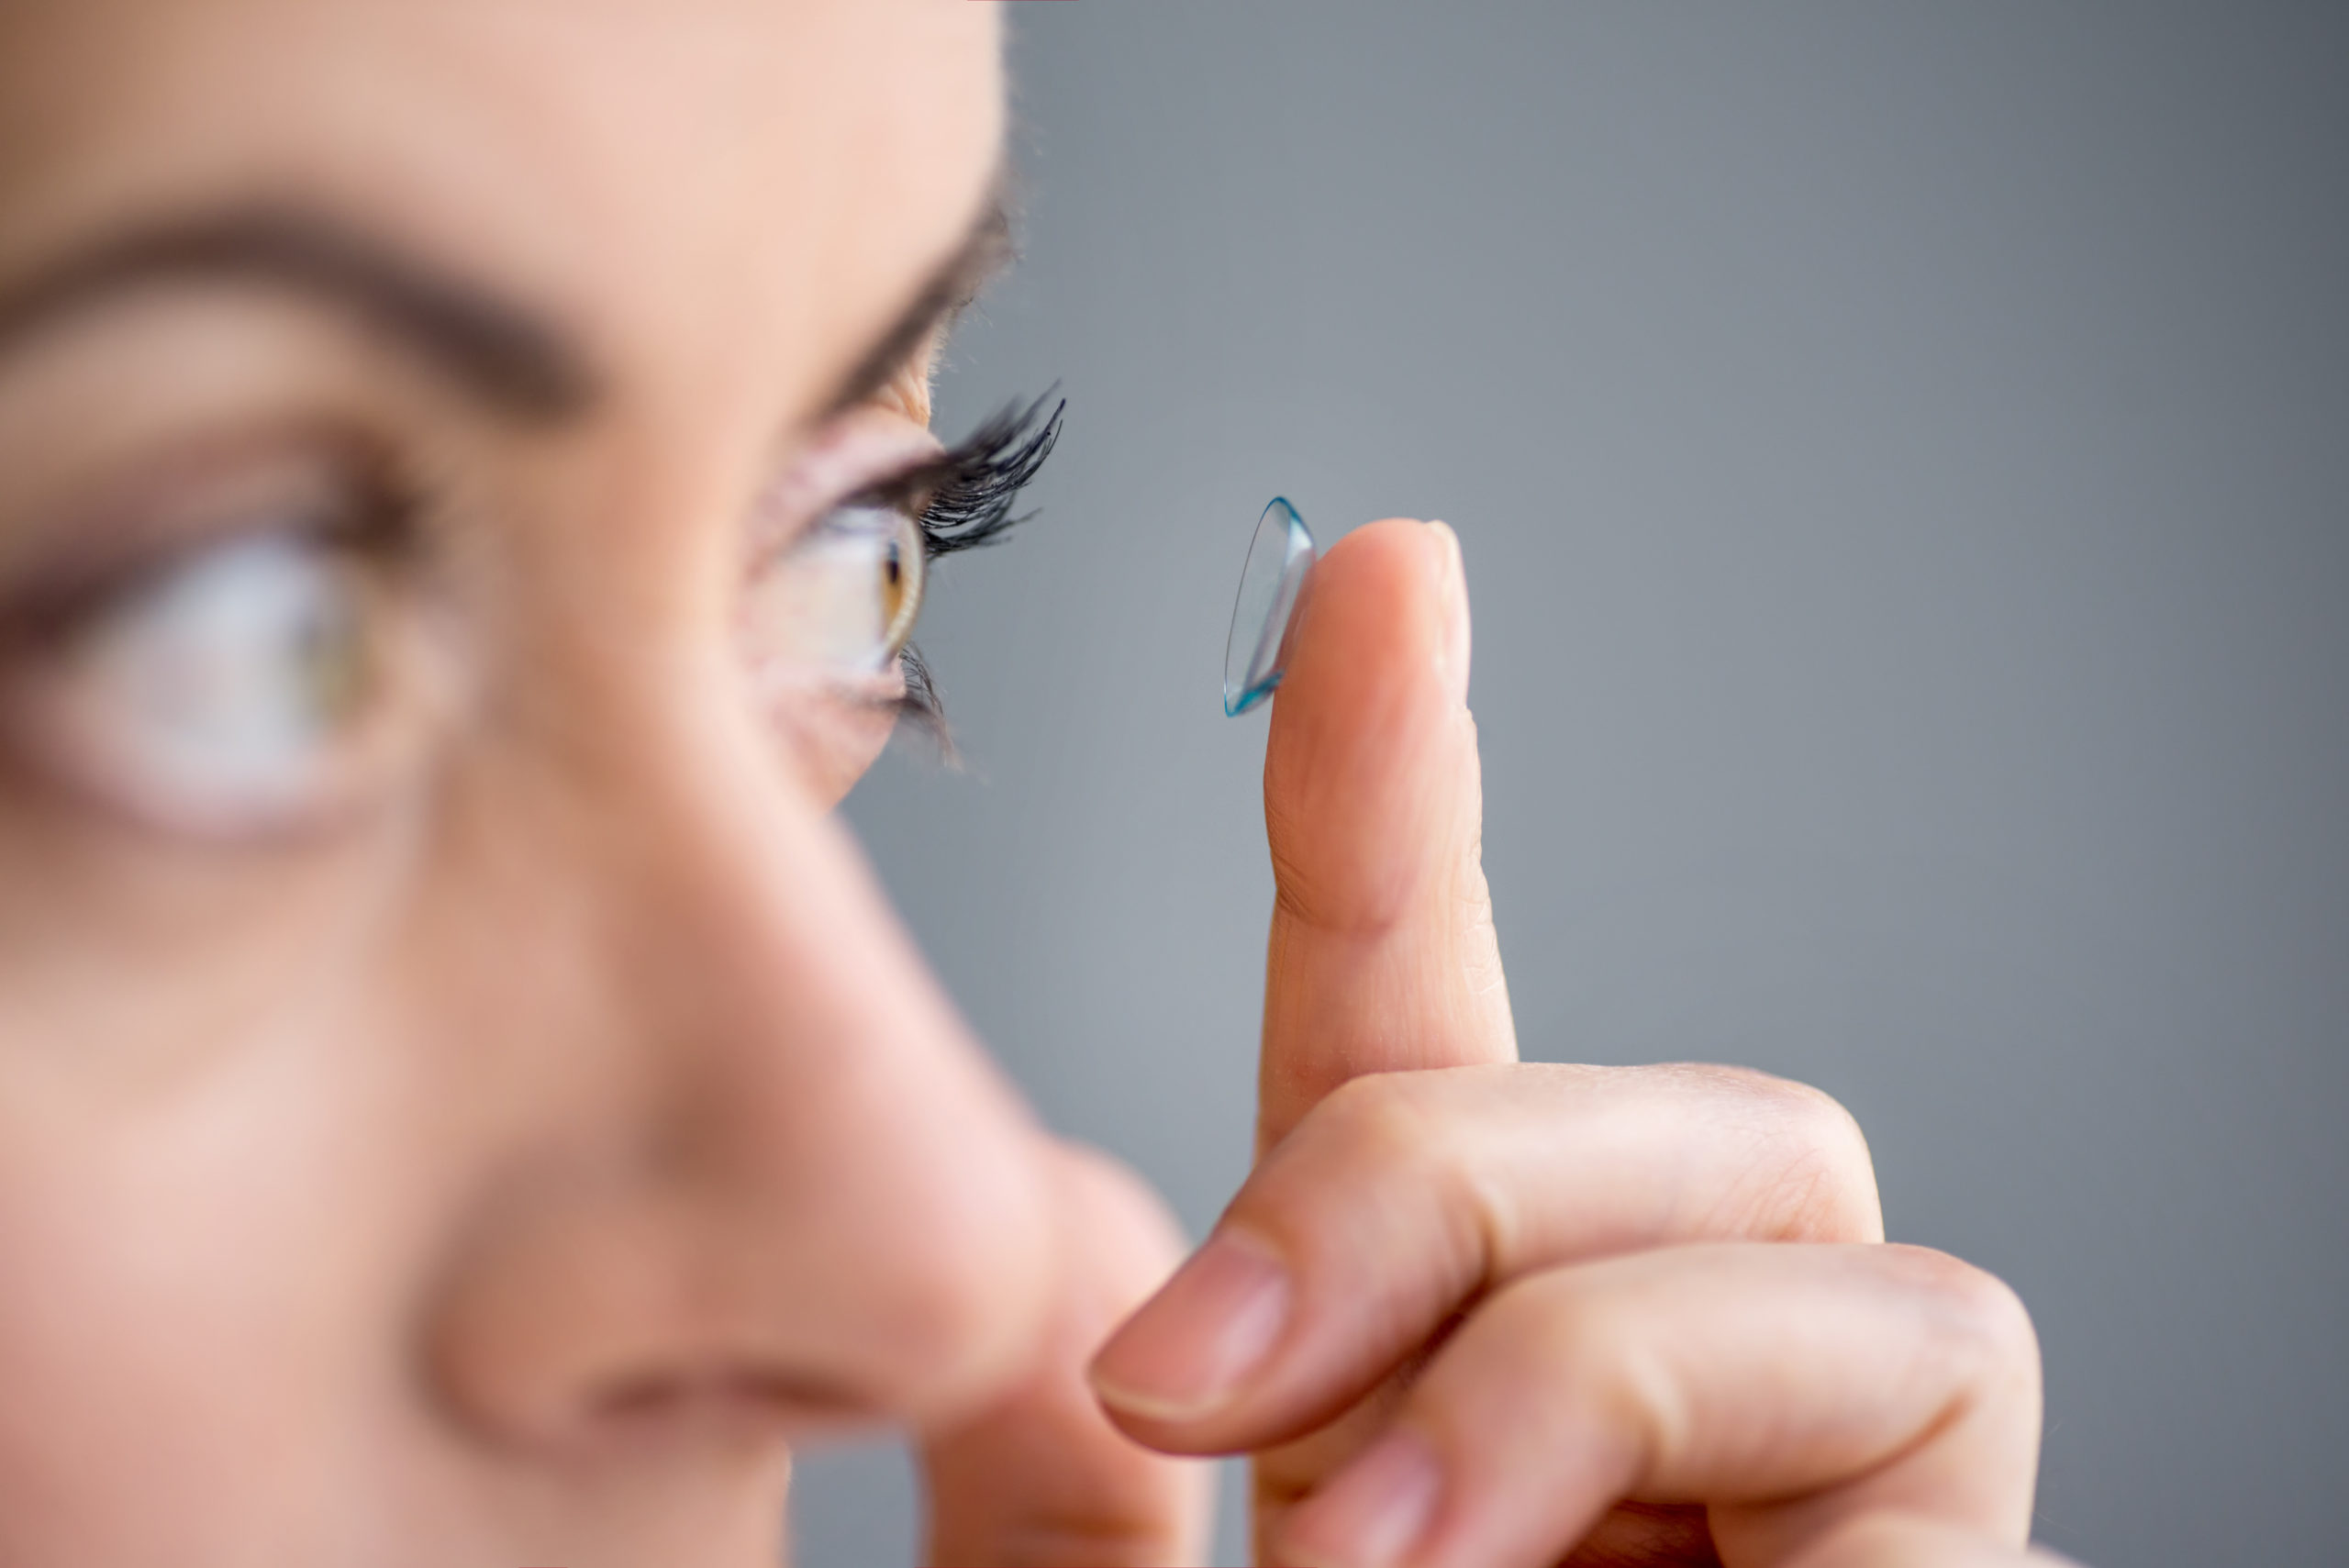 Kontaktlinsen - 8 hilfreiche Tipps für richtiges Einsetzen, Tragen und Pflegen